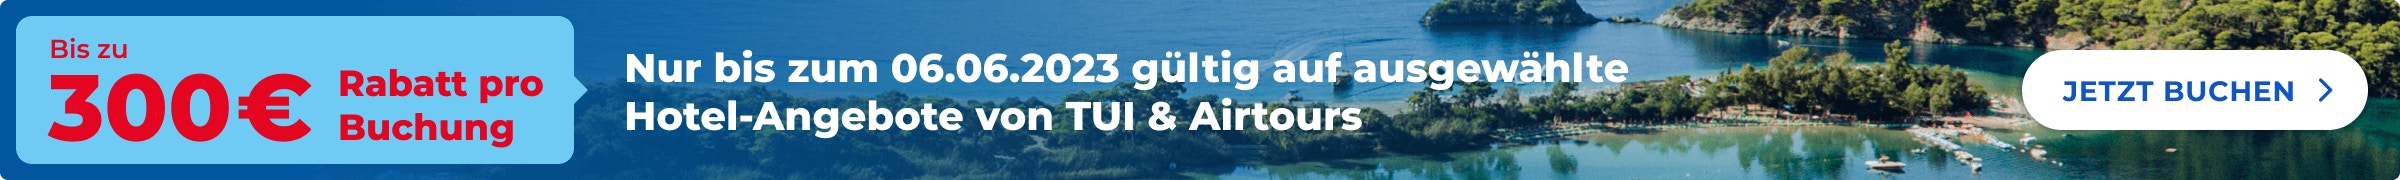 TUI und airtours bieten bis zum 06.06. einen zusätzlichen Nachlass von bis zu 300 Euro pro Buchung auf ausgewählte Hotels. Der Rabatt wird von TUI automatisch abgezogen.